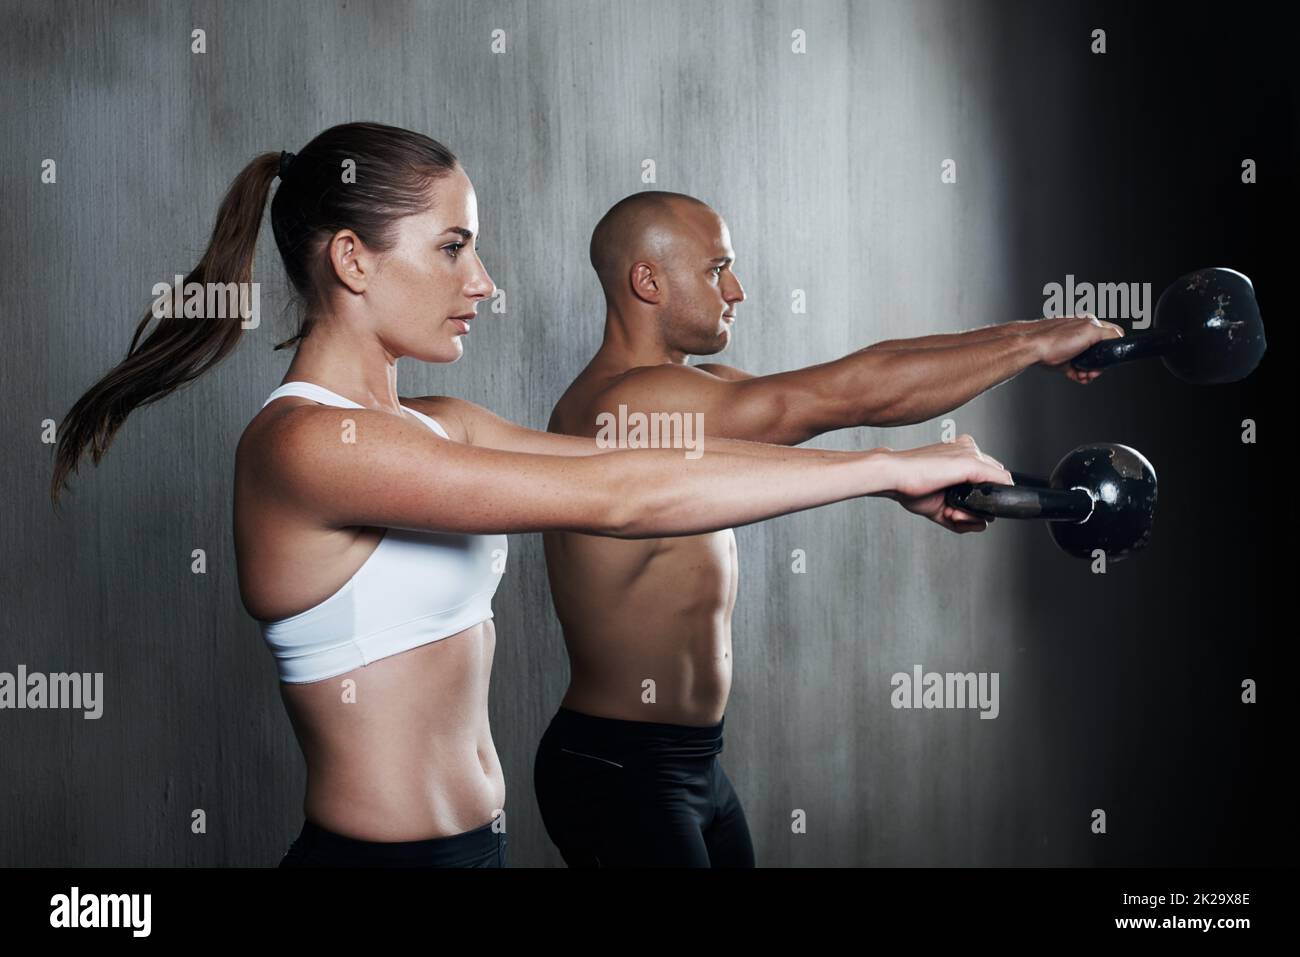 Training, um fit zu werden. Ein Mann und eine Frau trainieren mit den Kettelglocken im Fitnessstudio. Stockfoto